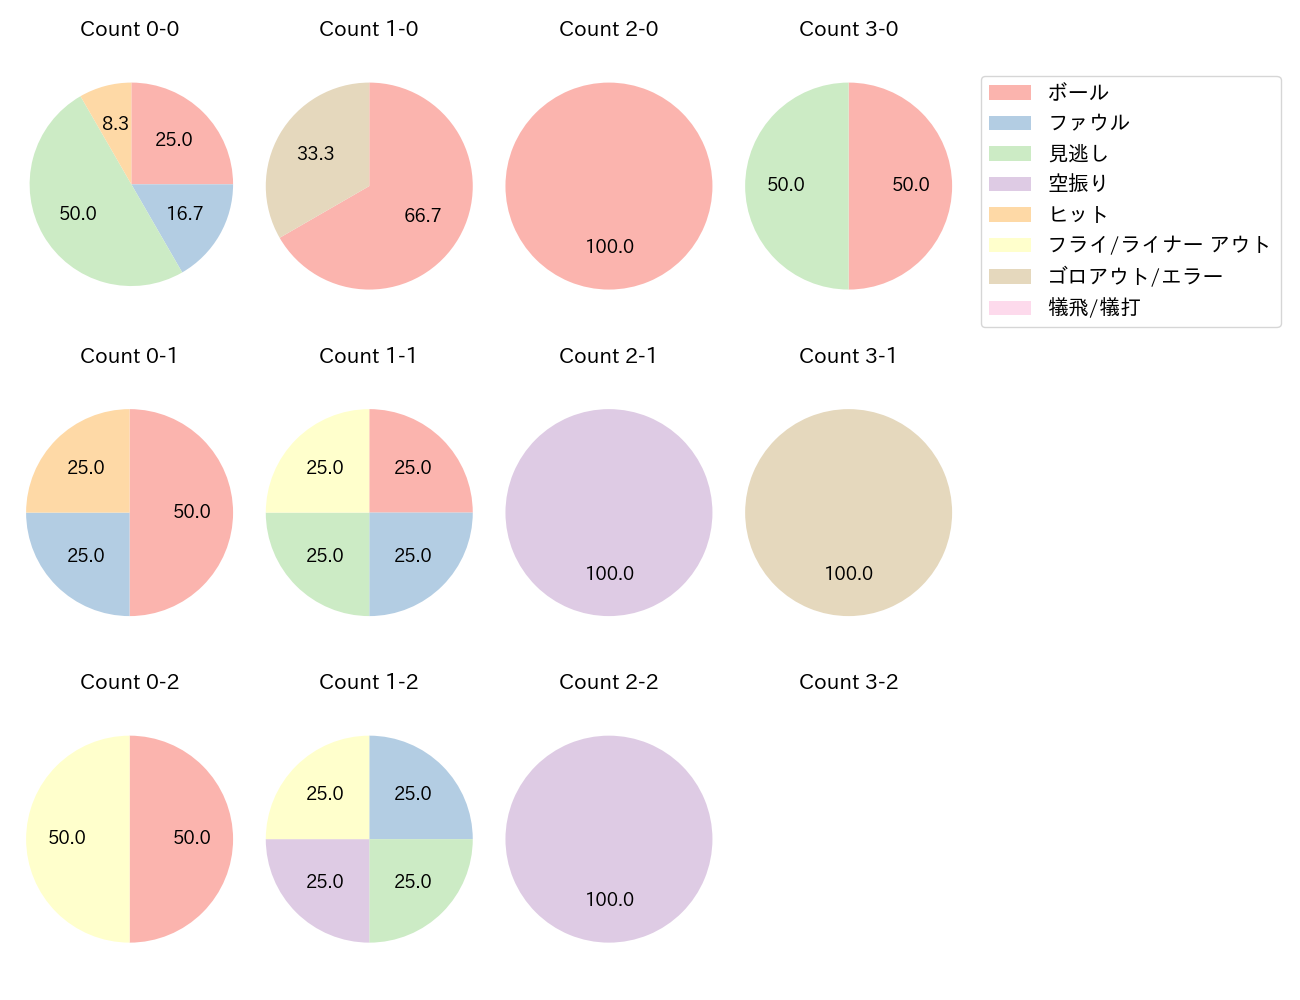 岸田 行倫の球数分布(2022年7月)